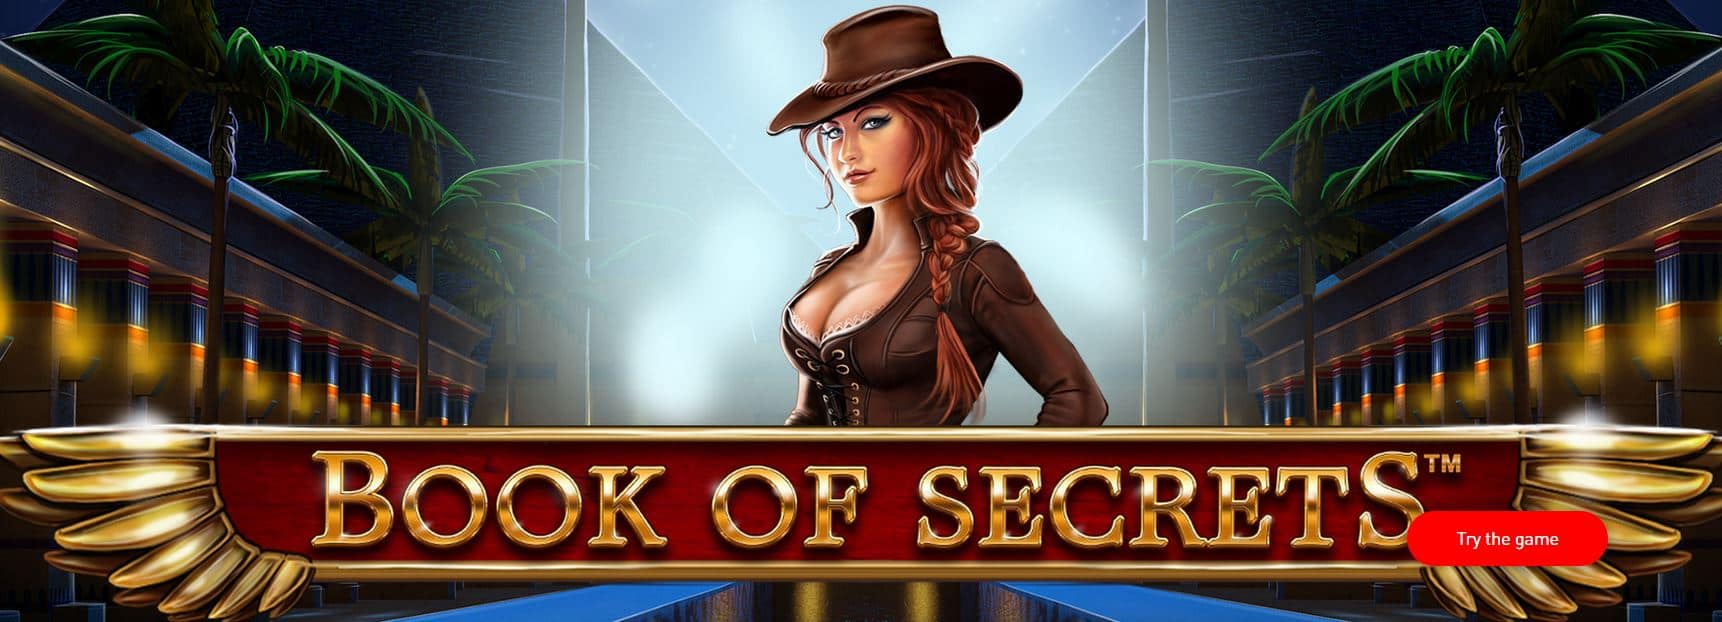 Book of Secrets păcănele gratis foto